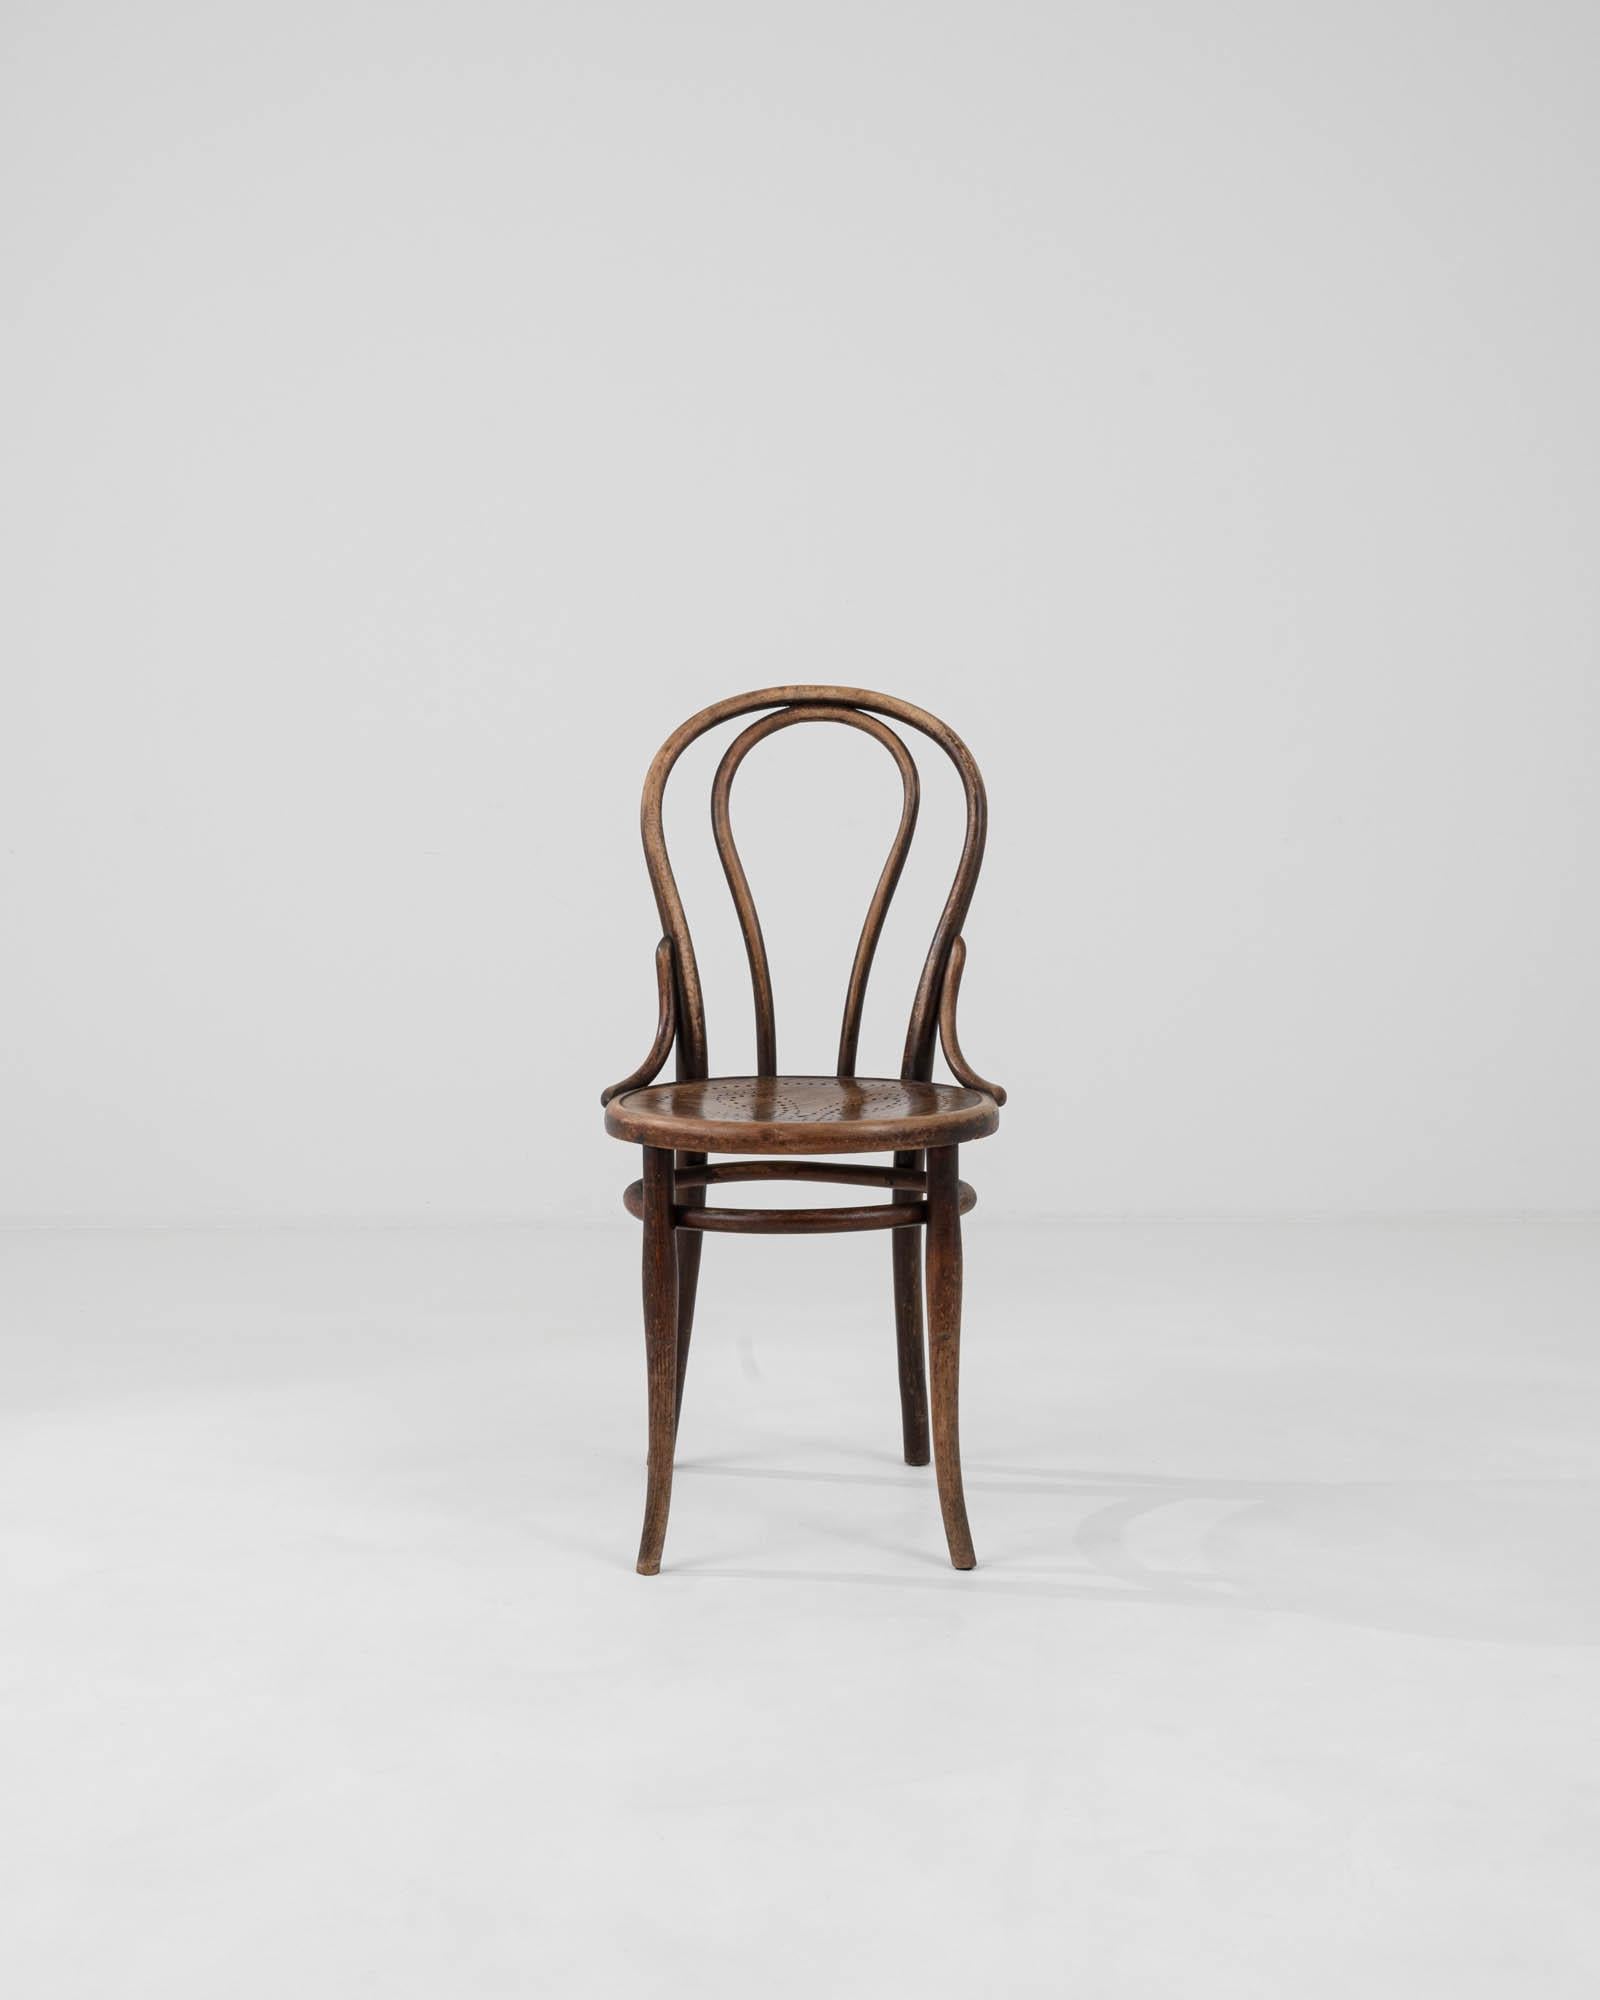 Découvrez l'élégance intemporelle du début du XXe siècle avec cette exquise chaise incurvée autrichienne de Thonet, un chef-d'œuvre d'artisanat et de design. Datant d'une époque où les détails et les formes en disaient long, cette chaise n'est pas